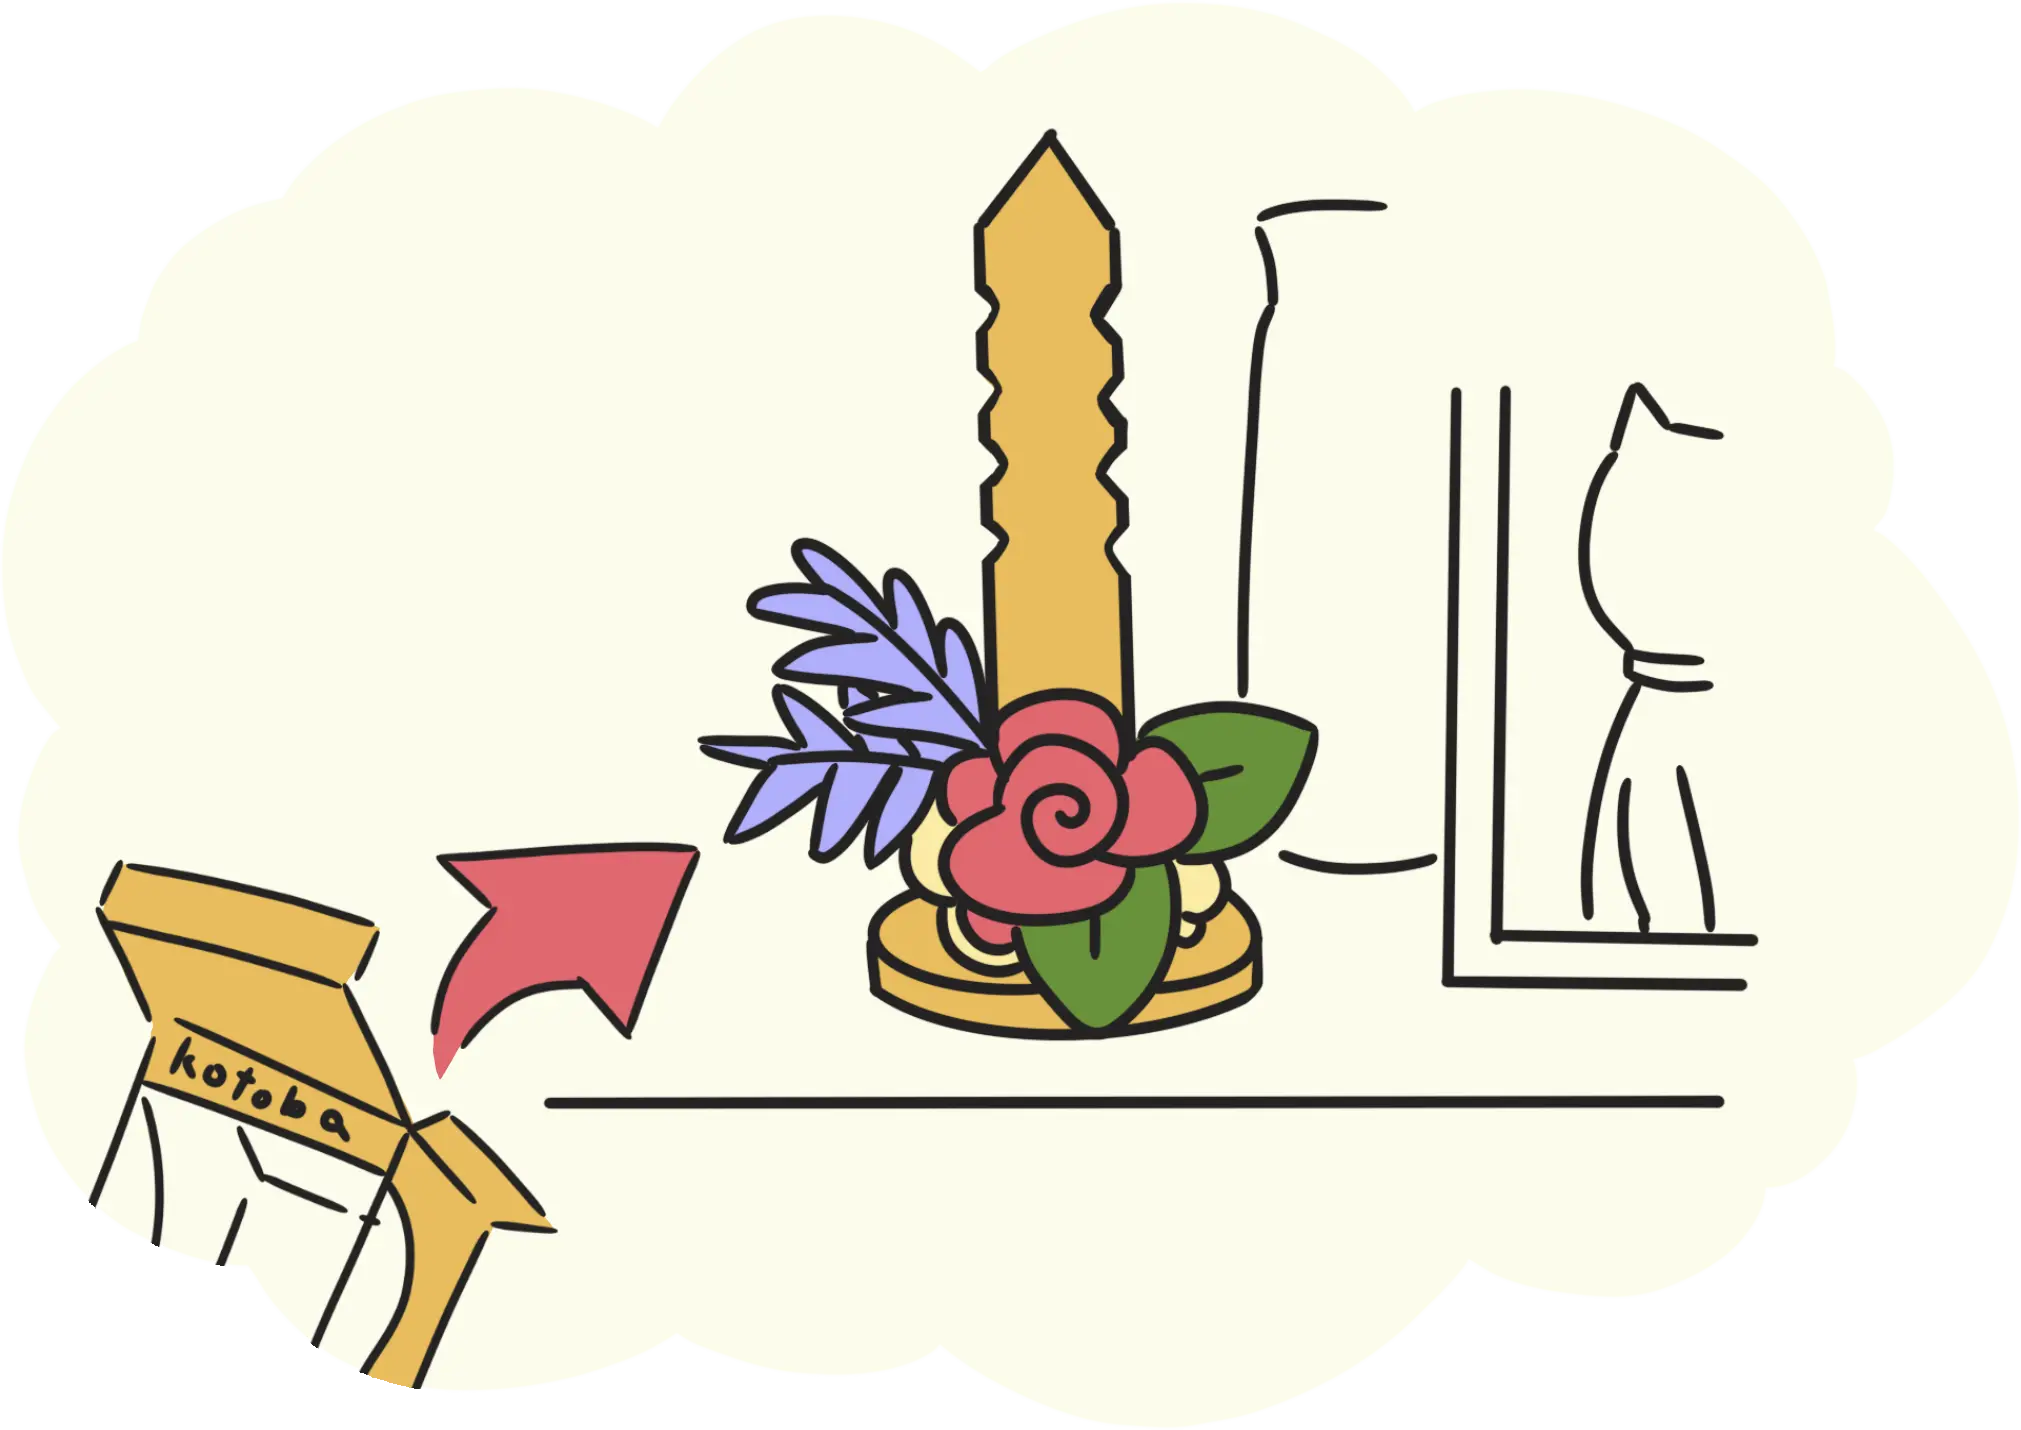 商品の使い方、ステップ1の図説です。花手紙kotobaを箱から出して、ペットの写真のそばに飾っています。